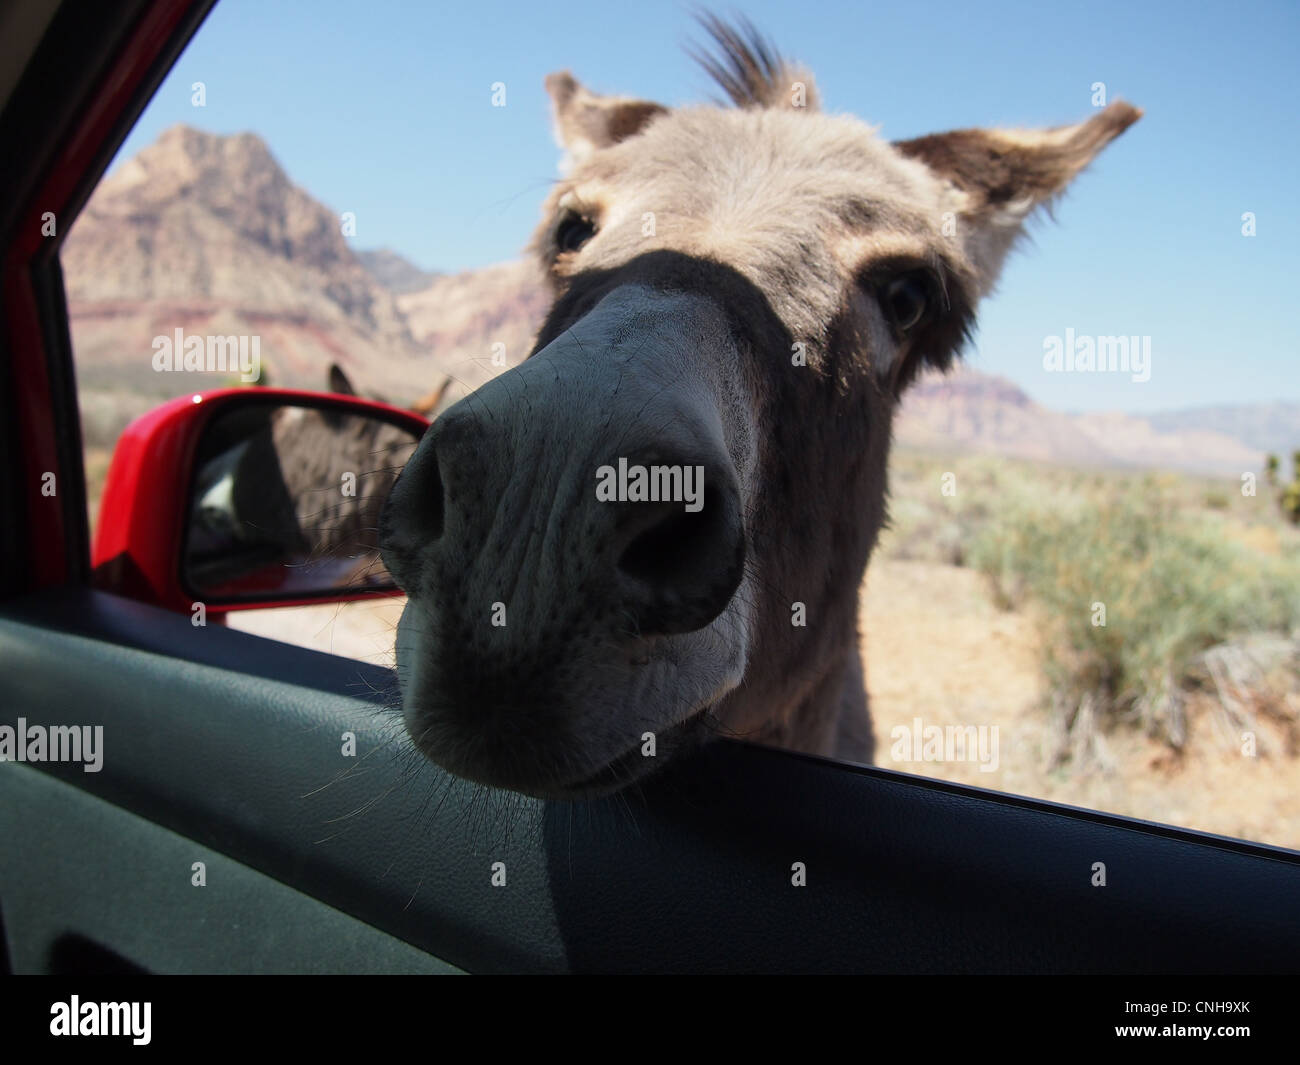 Burro donkey poking nose into car Stock Photo